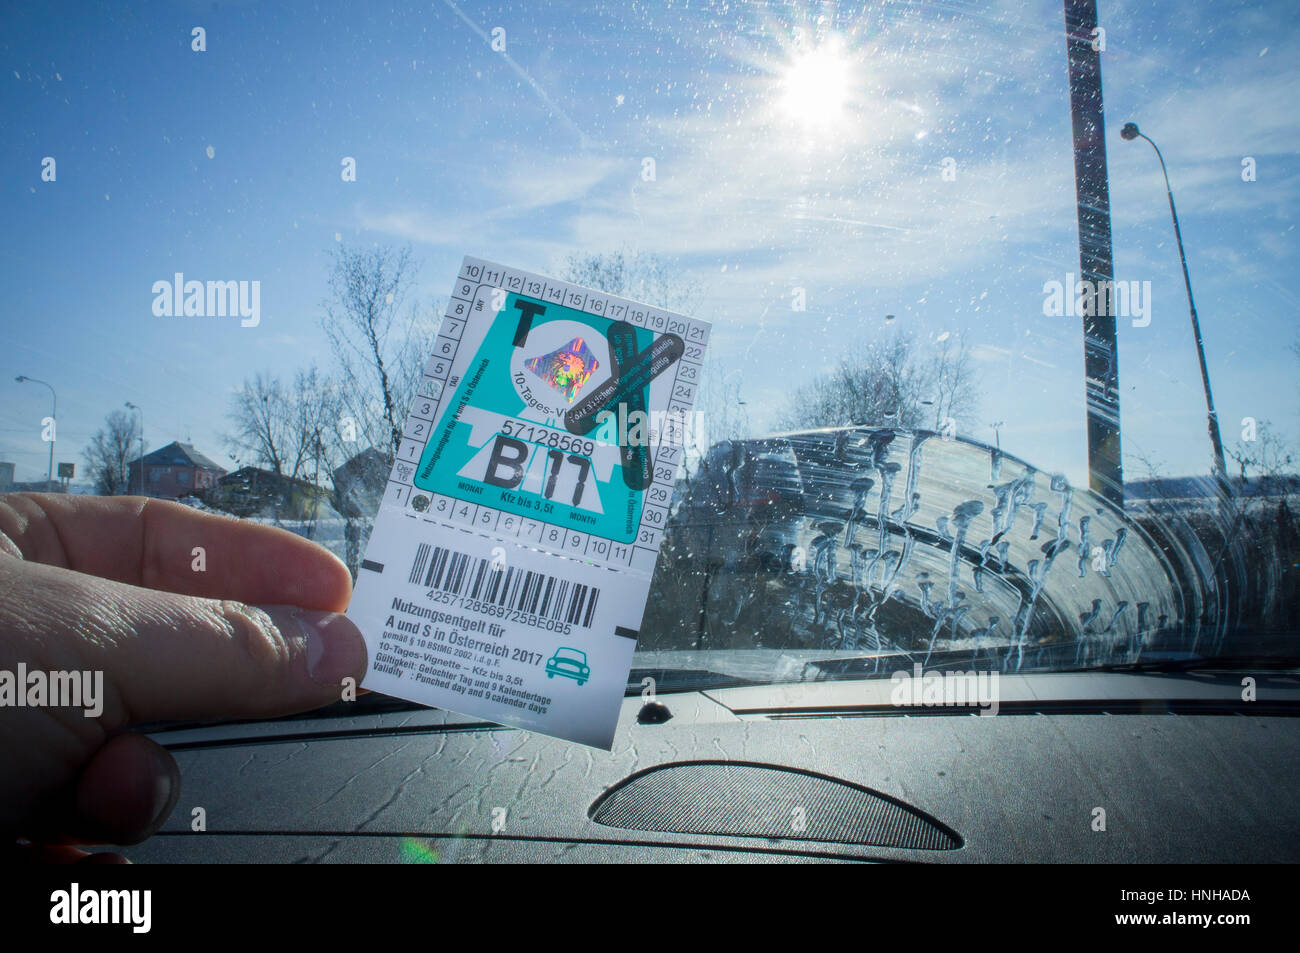 Austria Highway Vignette 2017, 10 days toll sticker Stock Photo